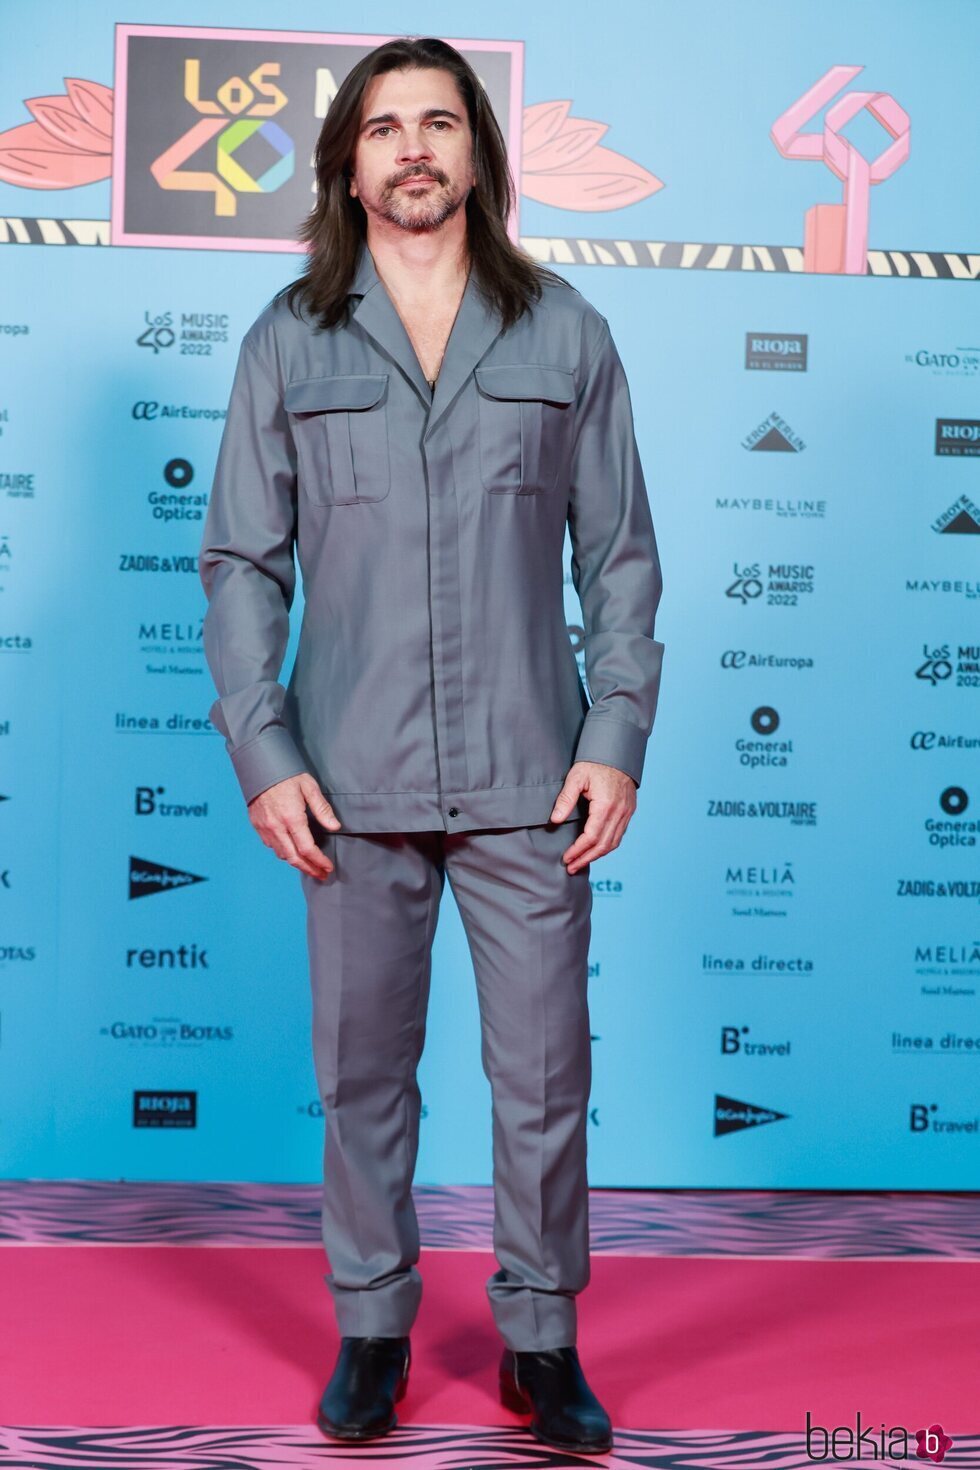 Juanes en Los 40 Music Awards 2022